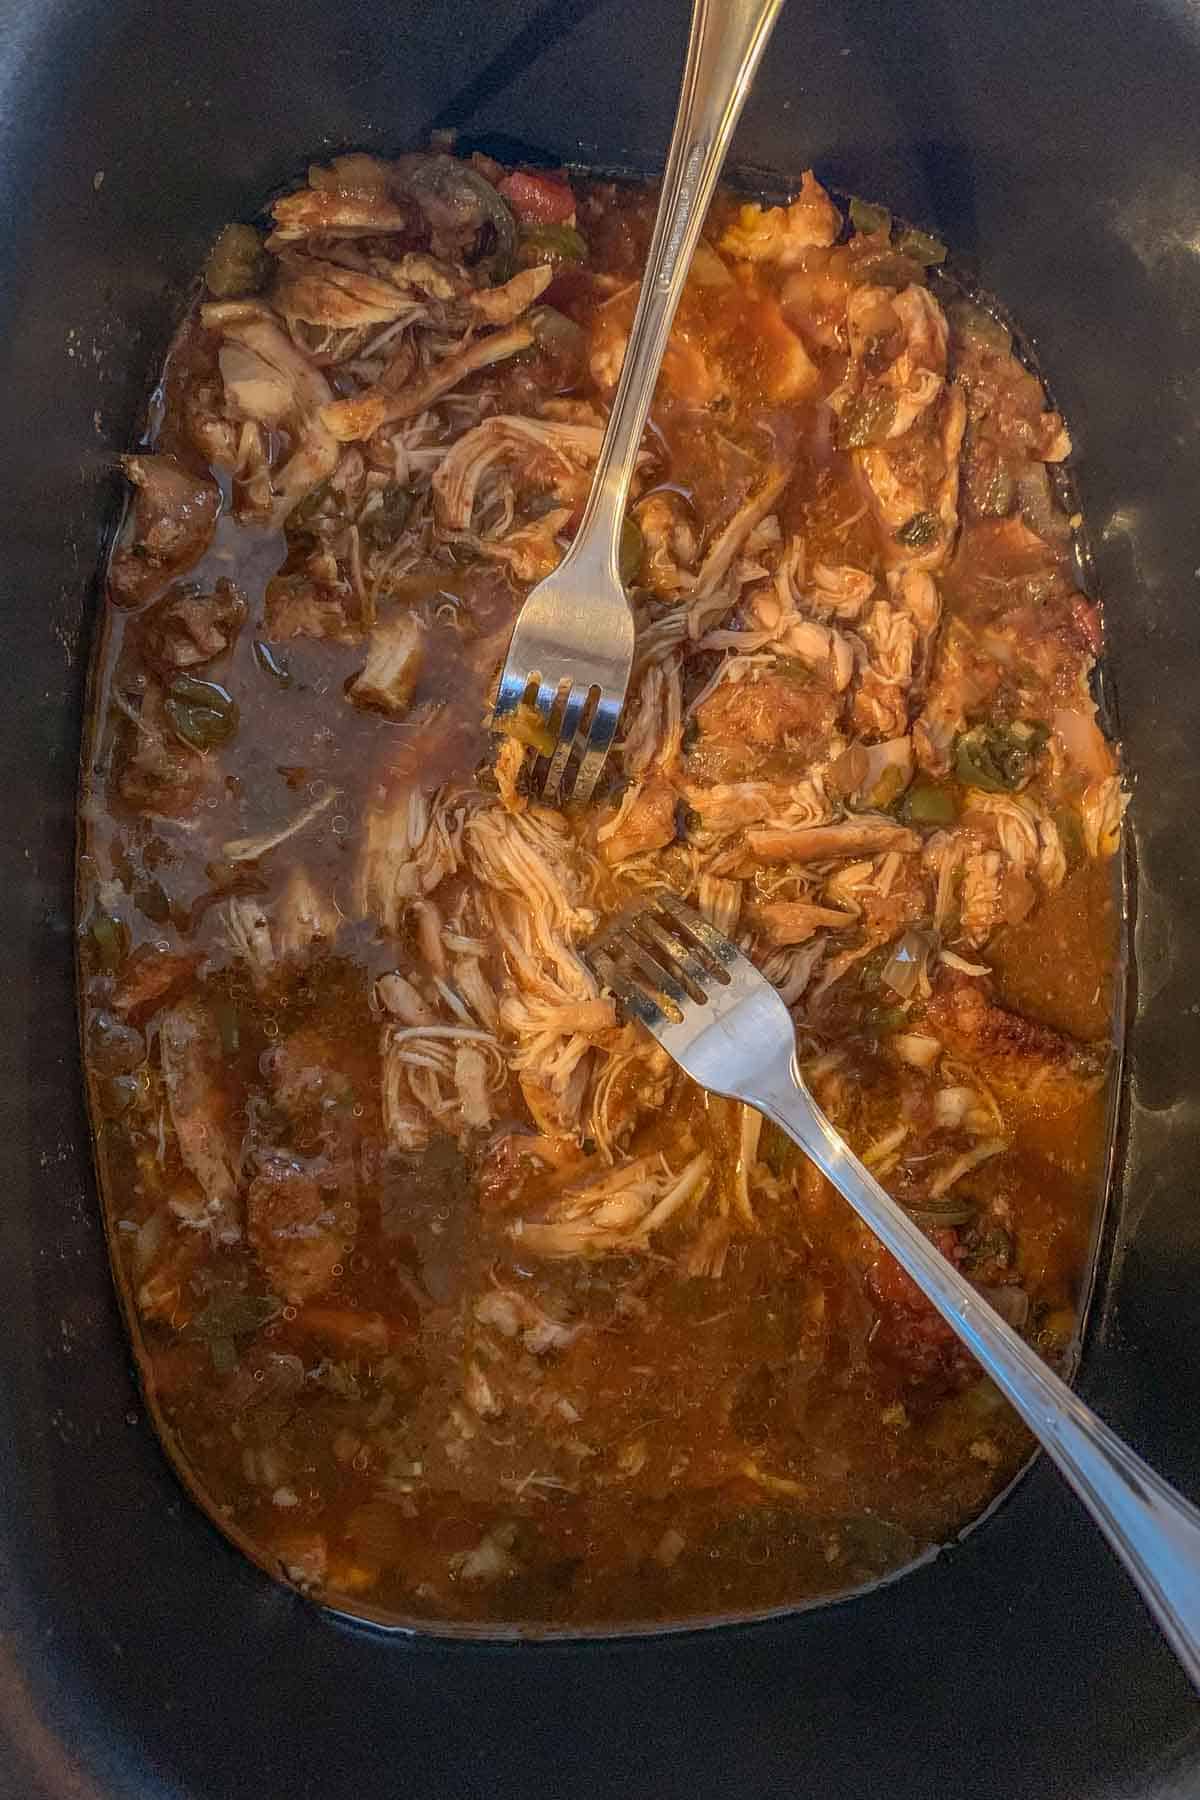 shredding chicken tacos in crock pot